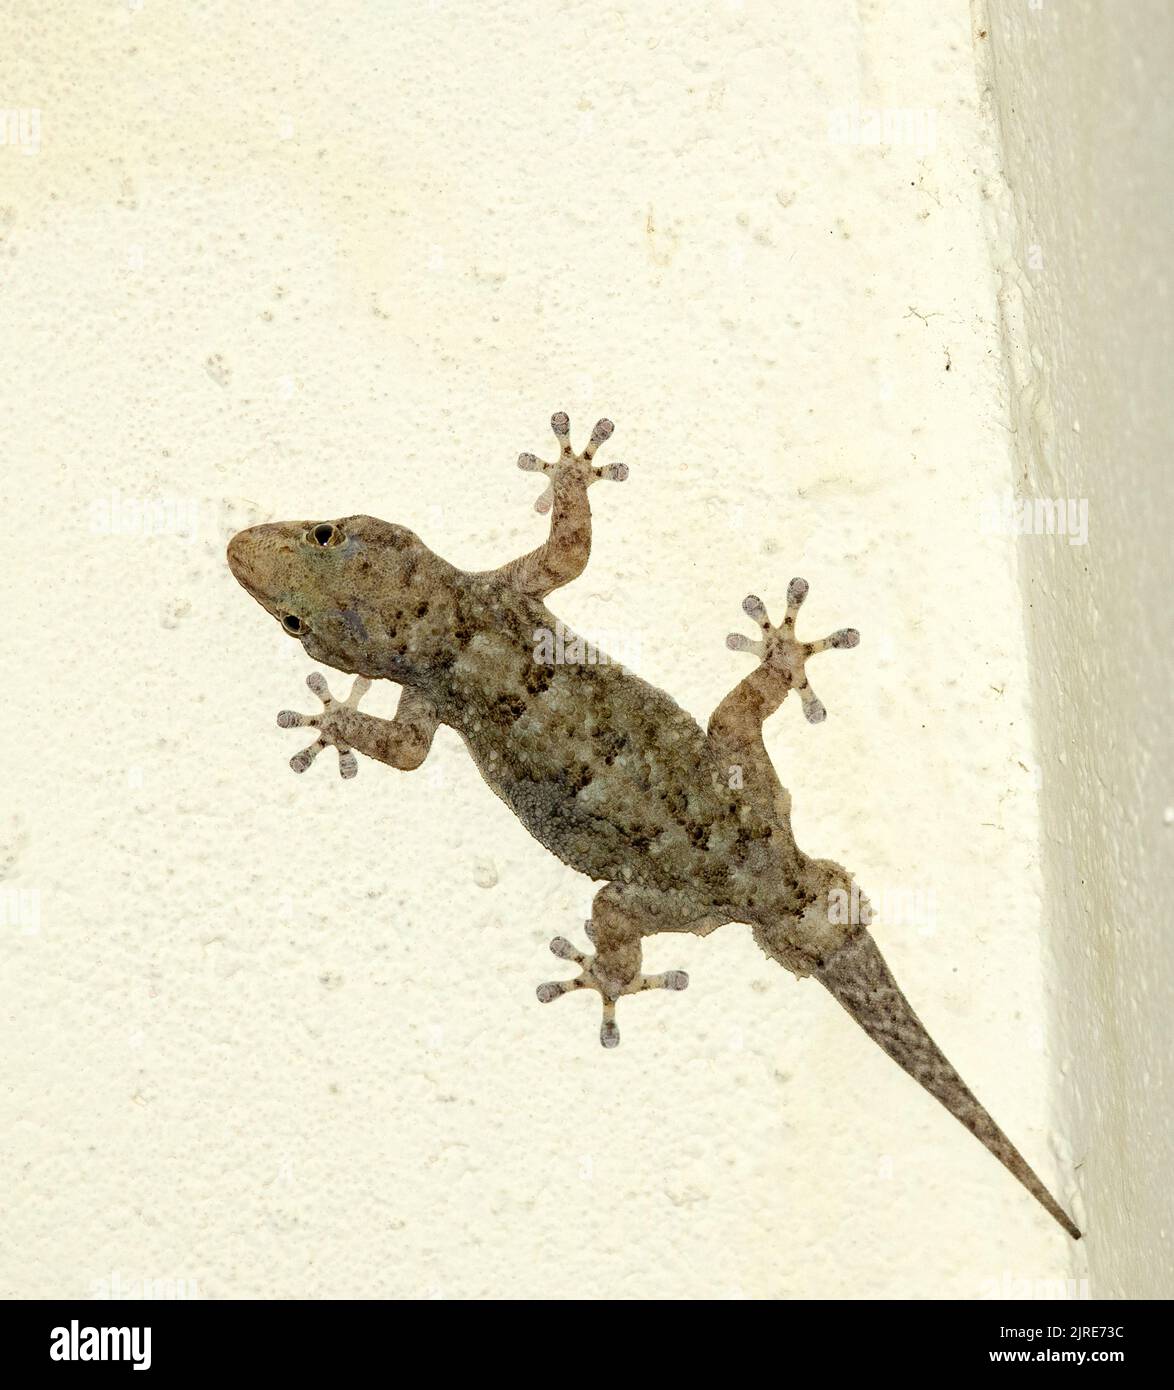 Der tuberkulierte Dickzehengecko ist ein gewöhnlicher, stämgiger Gecko, dem an den vergrößerten Zehenpads keine Krallen fehlen. Sie sind nachtaktiv und oft um Licht aktiv Stockfoto